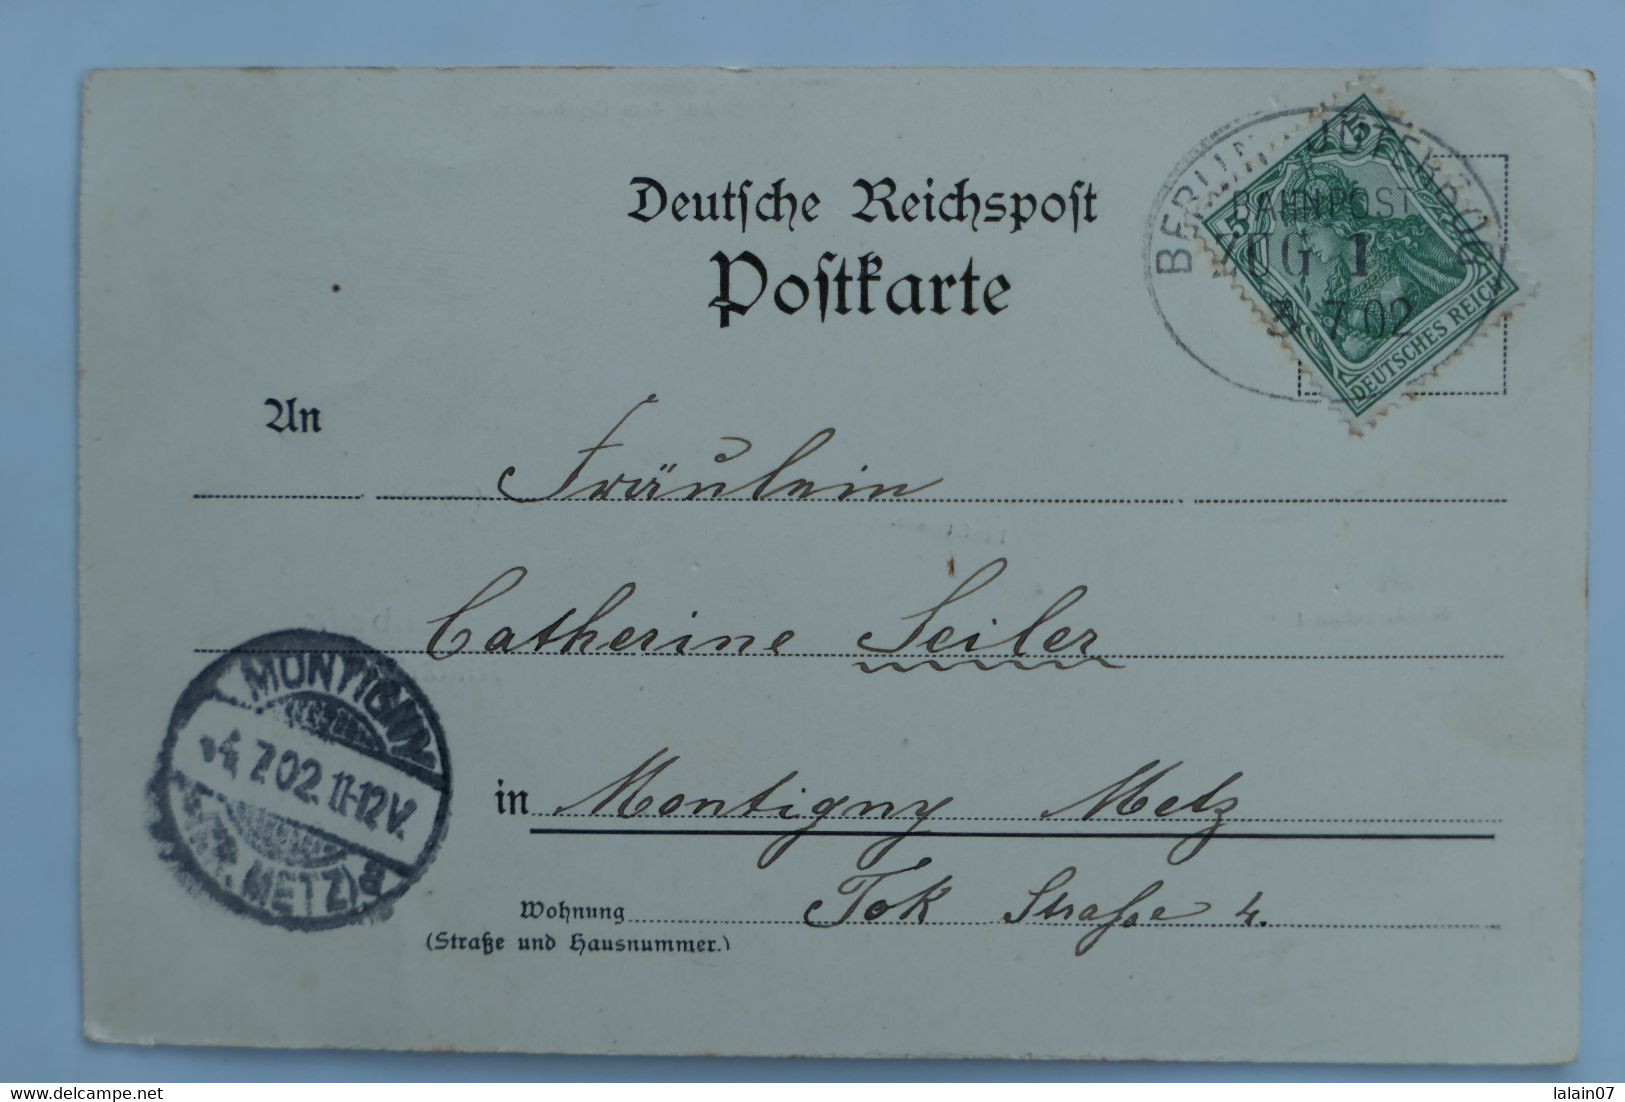 C. P. A. : Allemagne : Brandebourg : Gruss Aus SPERENBERG : Militärbahn, Timbre En 1902 - Spremberg